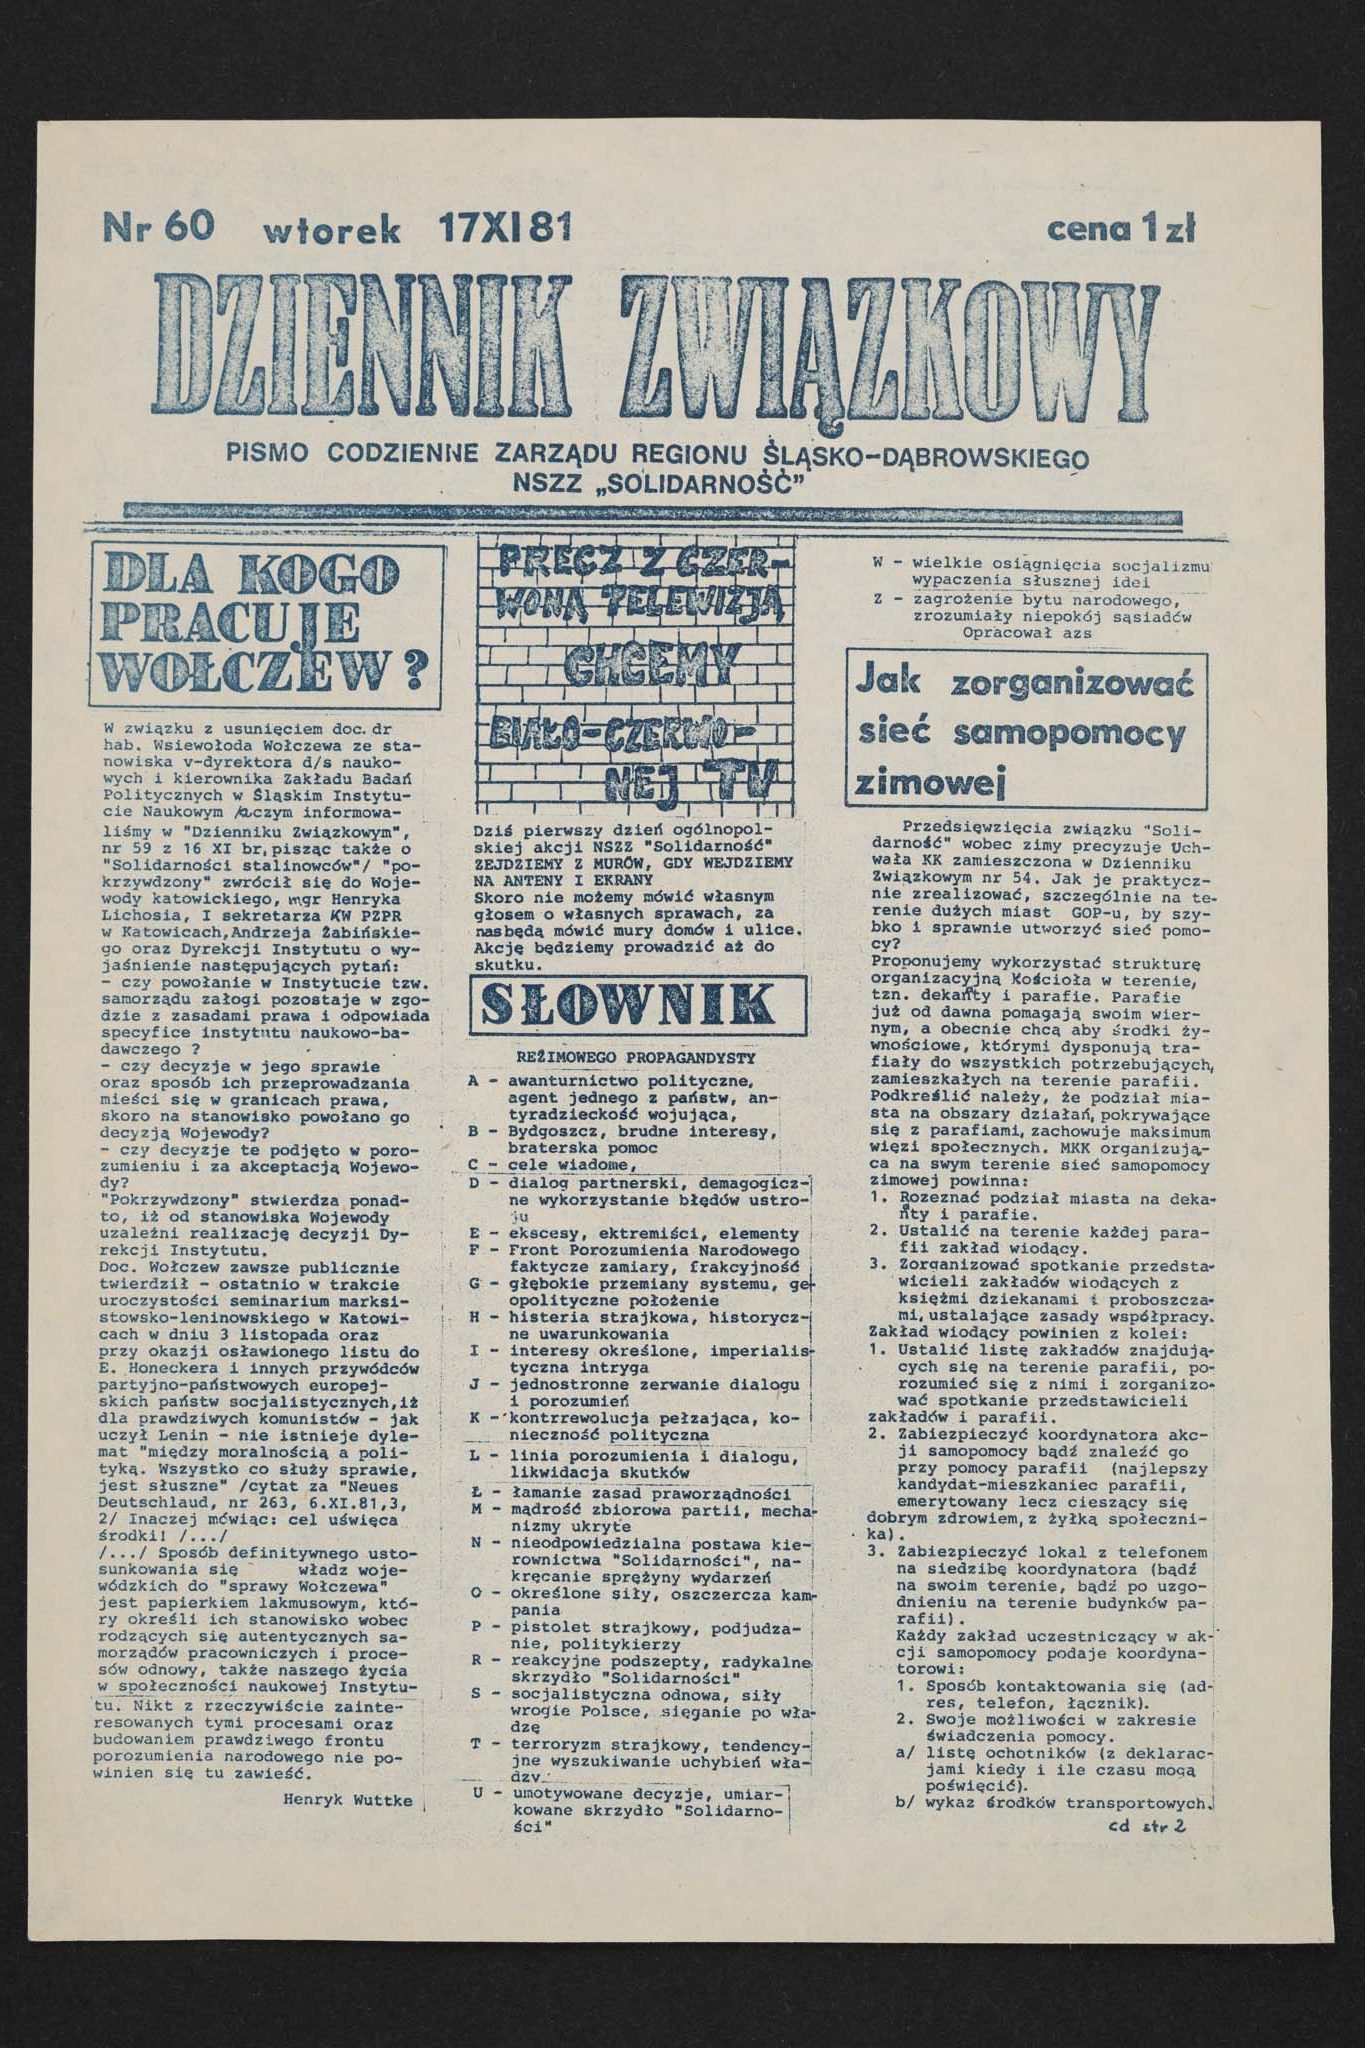 Dziennik związkowy nr 60 17.11.1981